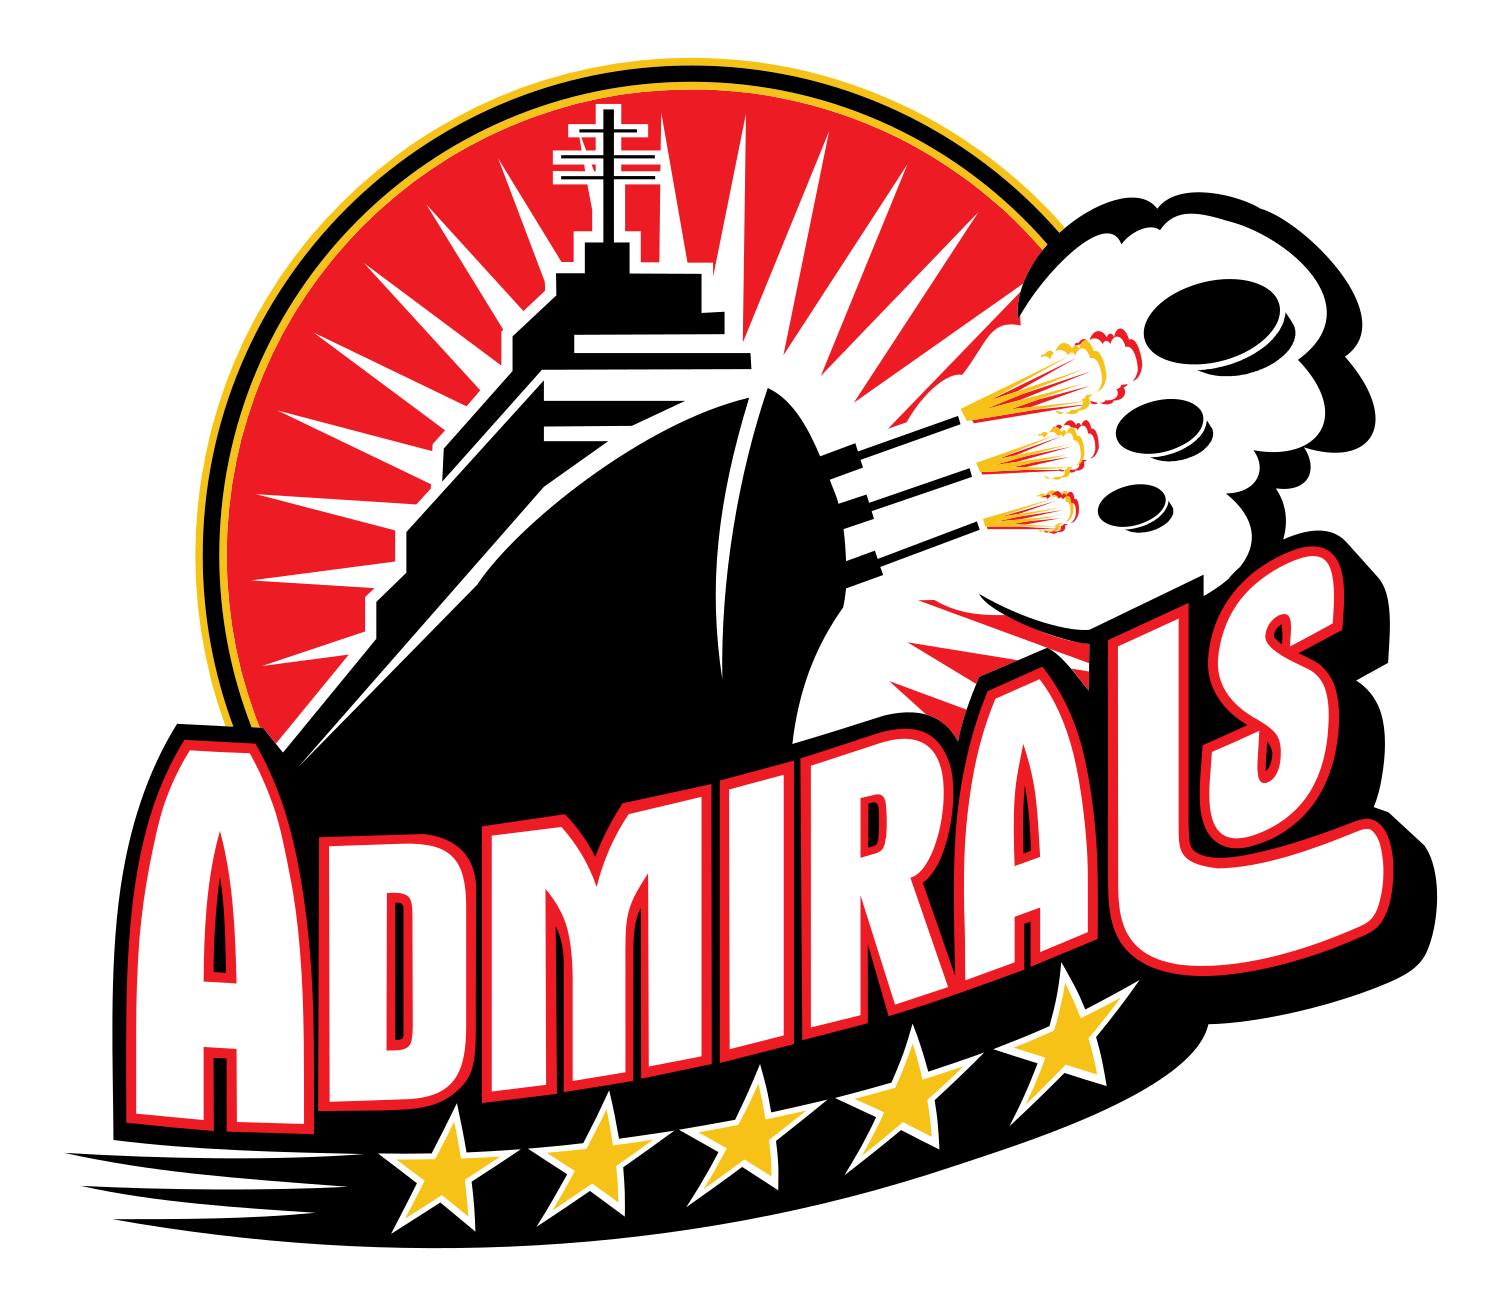 Admirals win 2012 Calder Cup Championship